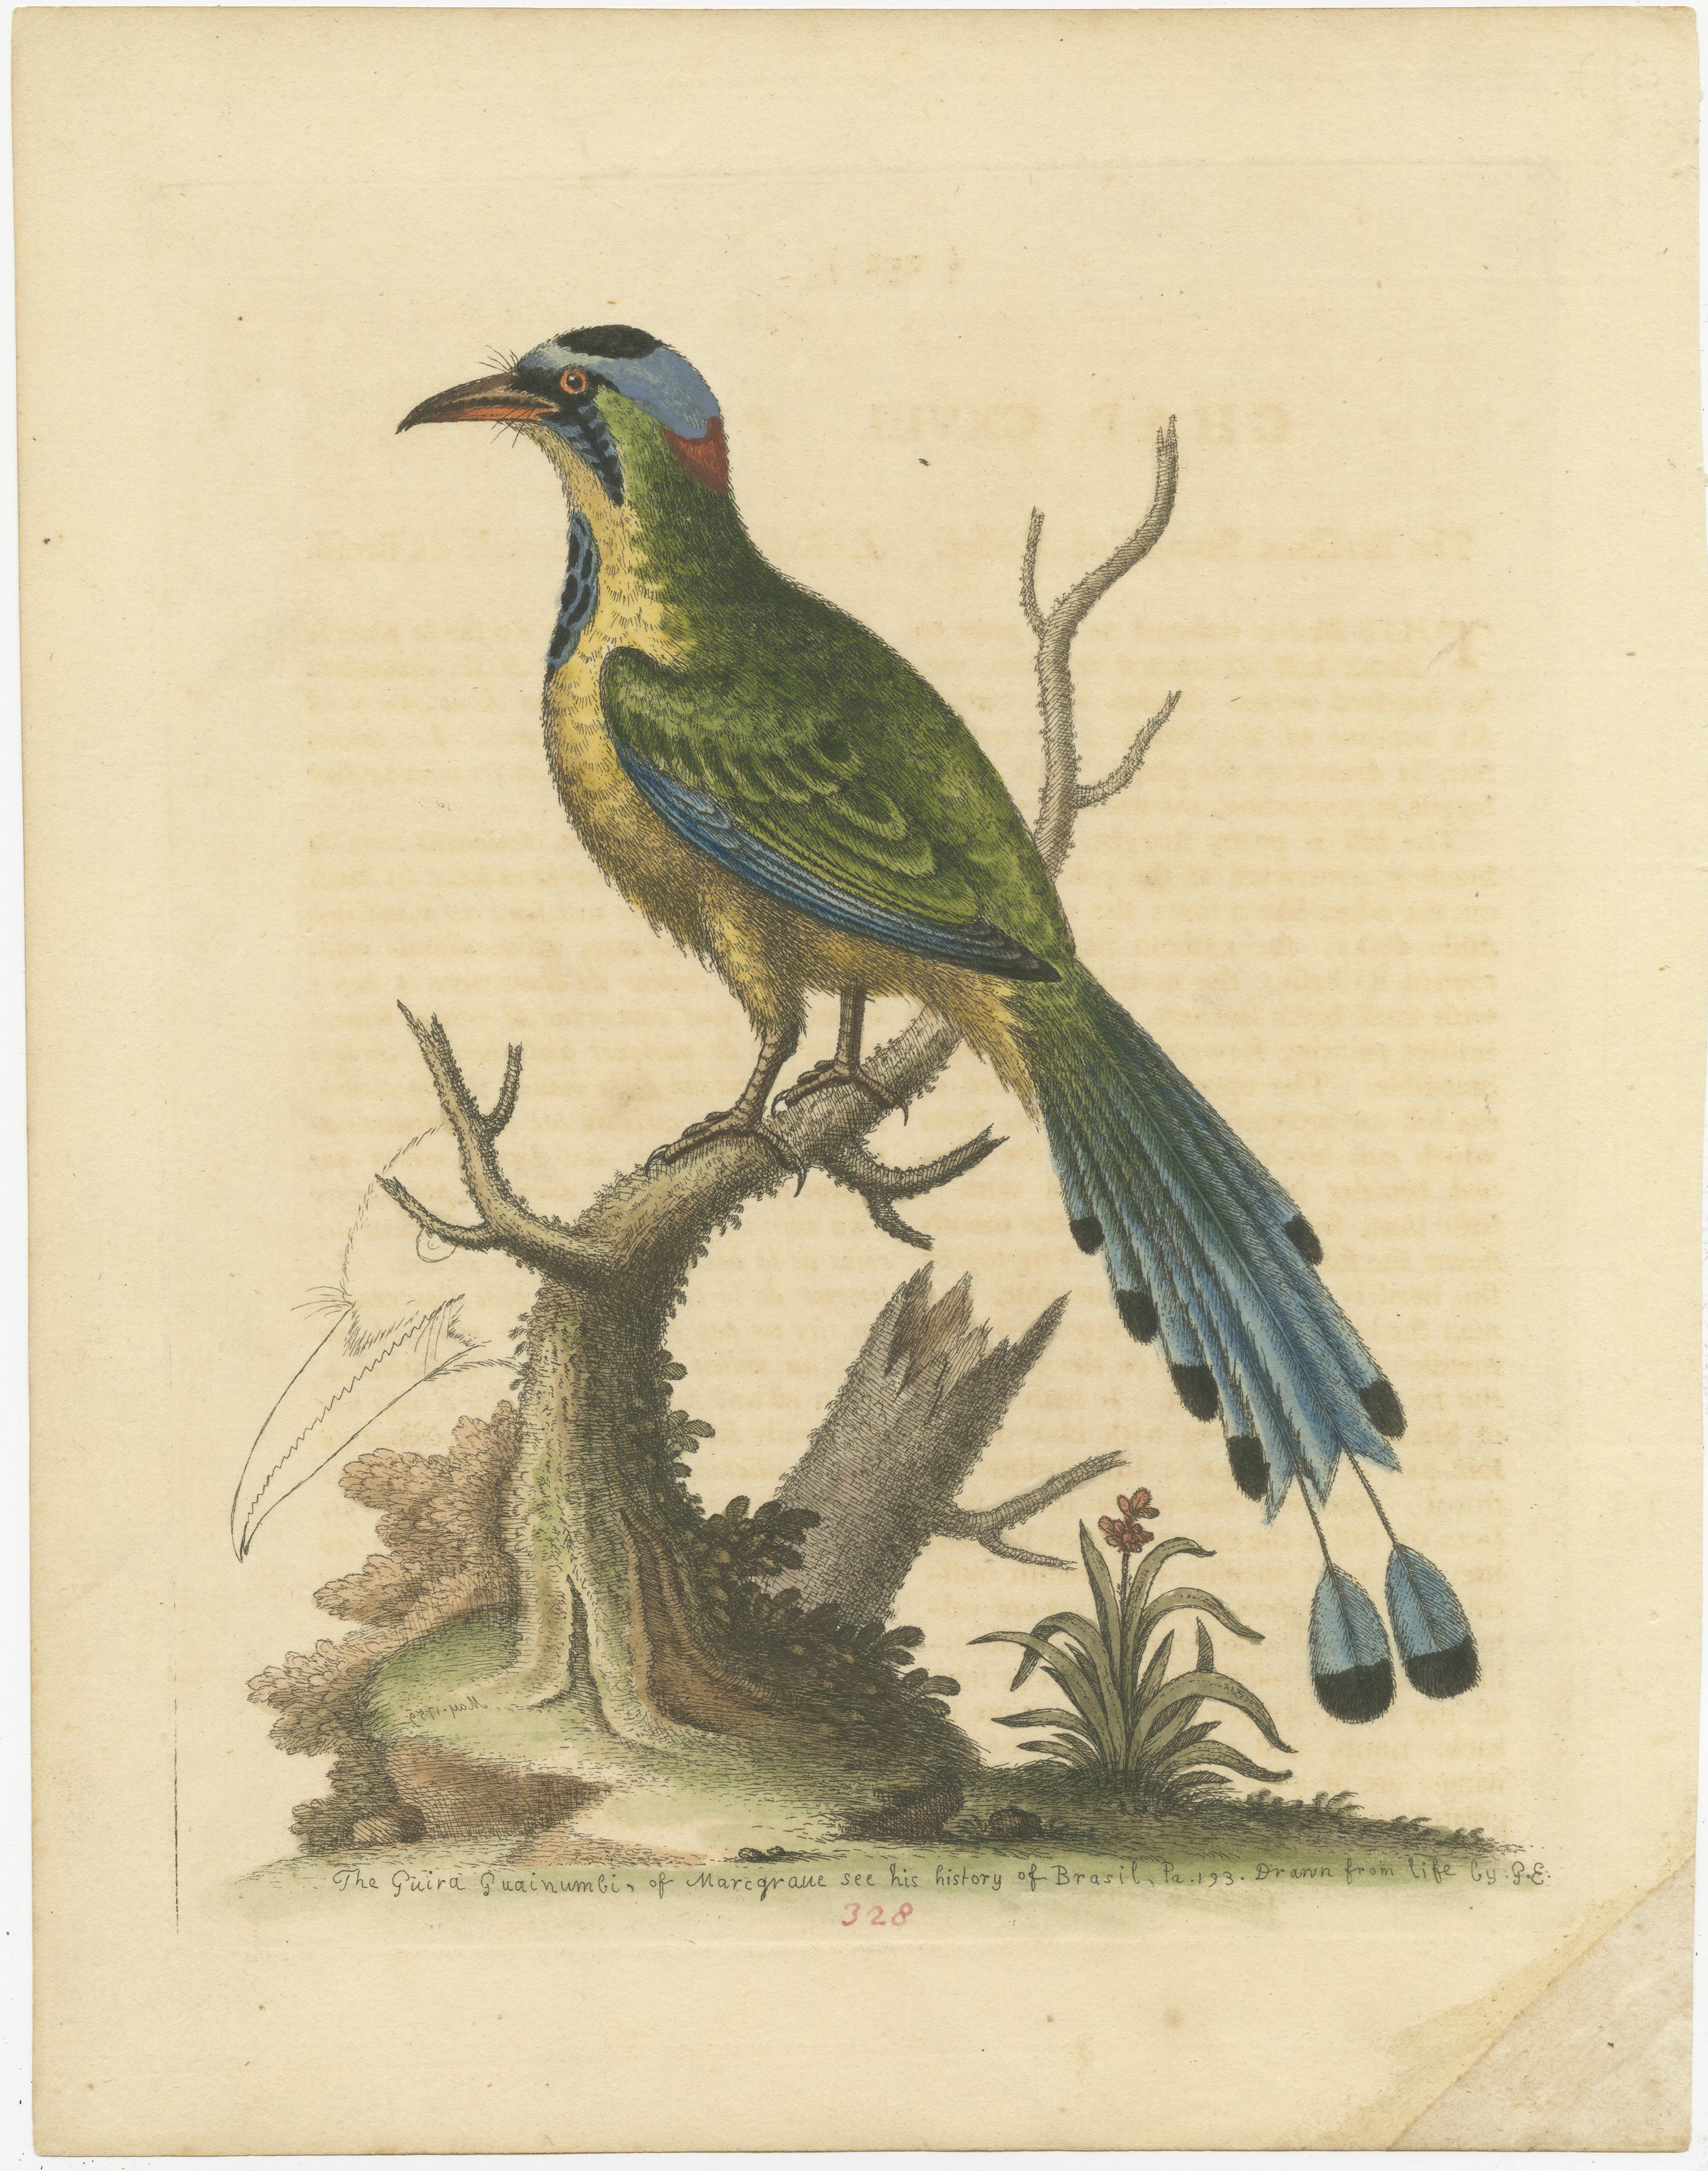 Gravure ancienne originale d'un oiseau, le Billing, Guira Guainumbi. Publié par George Edwards, vers 1760. 

George Edwards FRS (3 avril 1694 - 23 juillet 1773) était un naturaliste et ornithologue anglais, connu comme le 